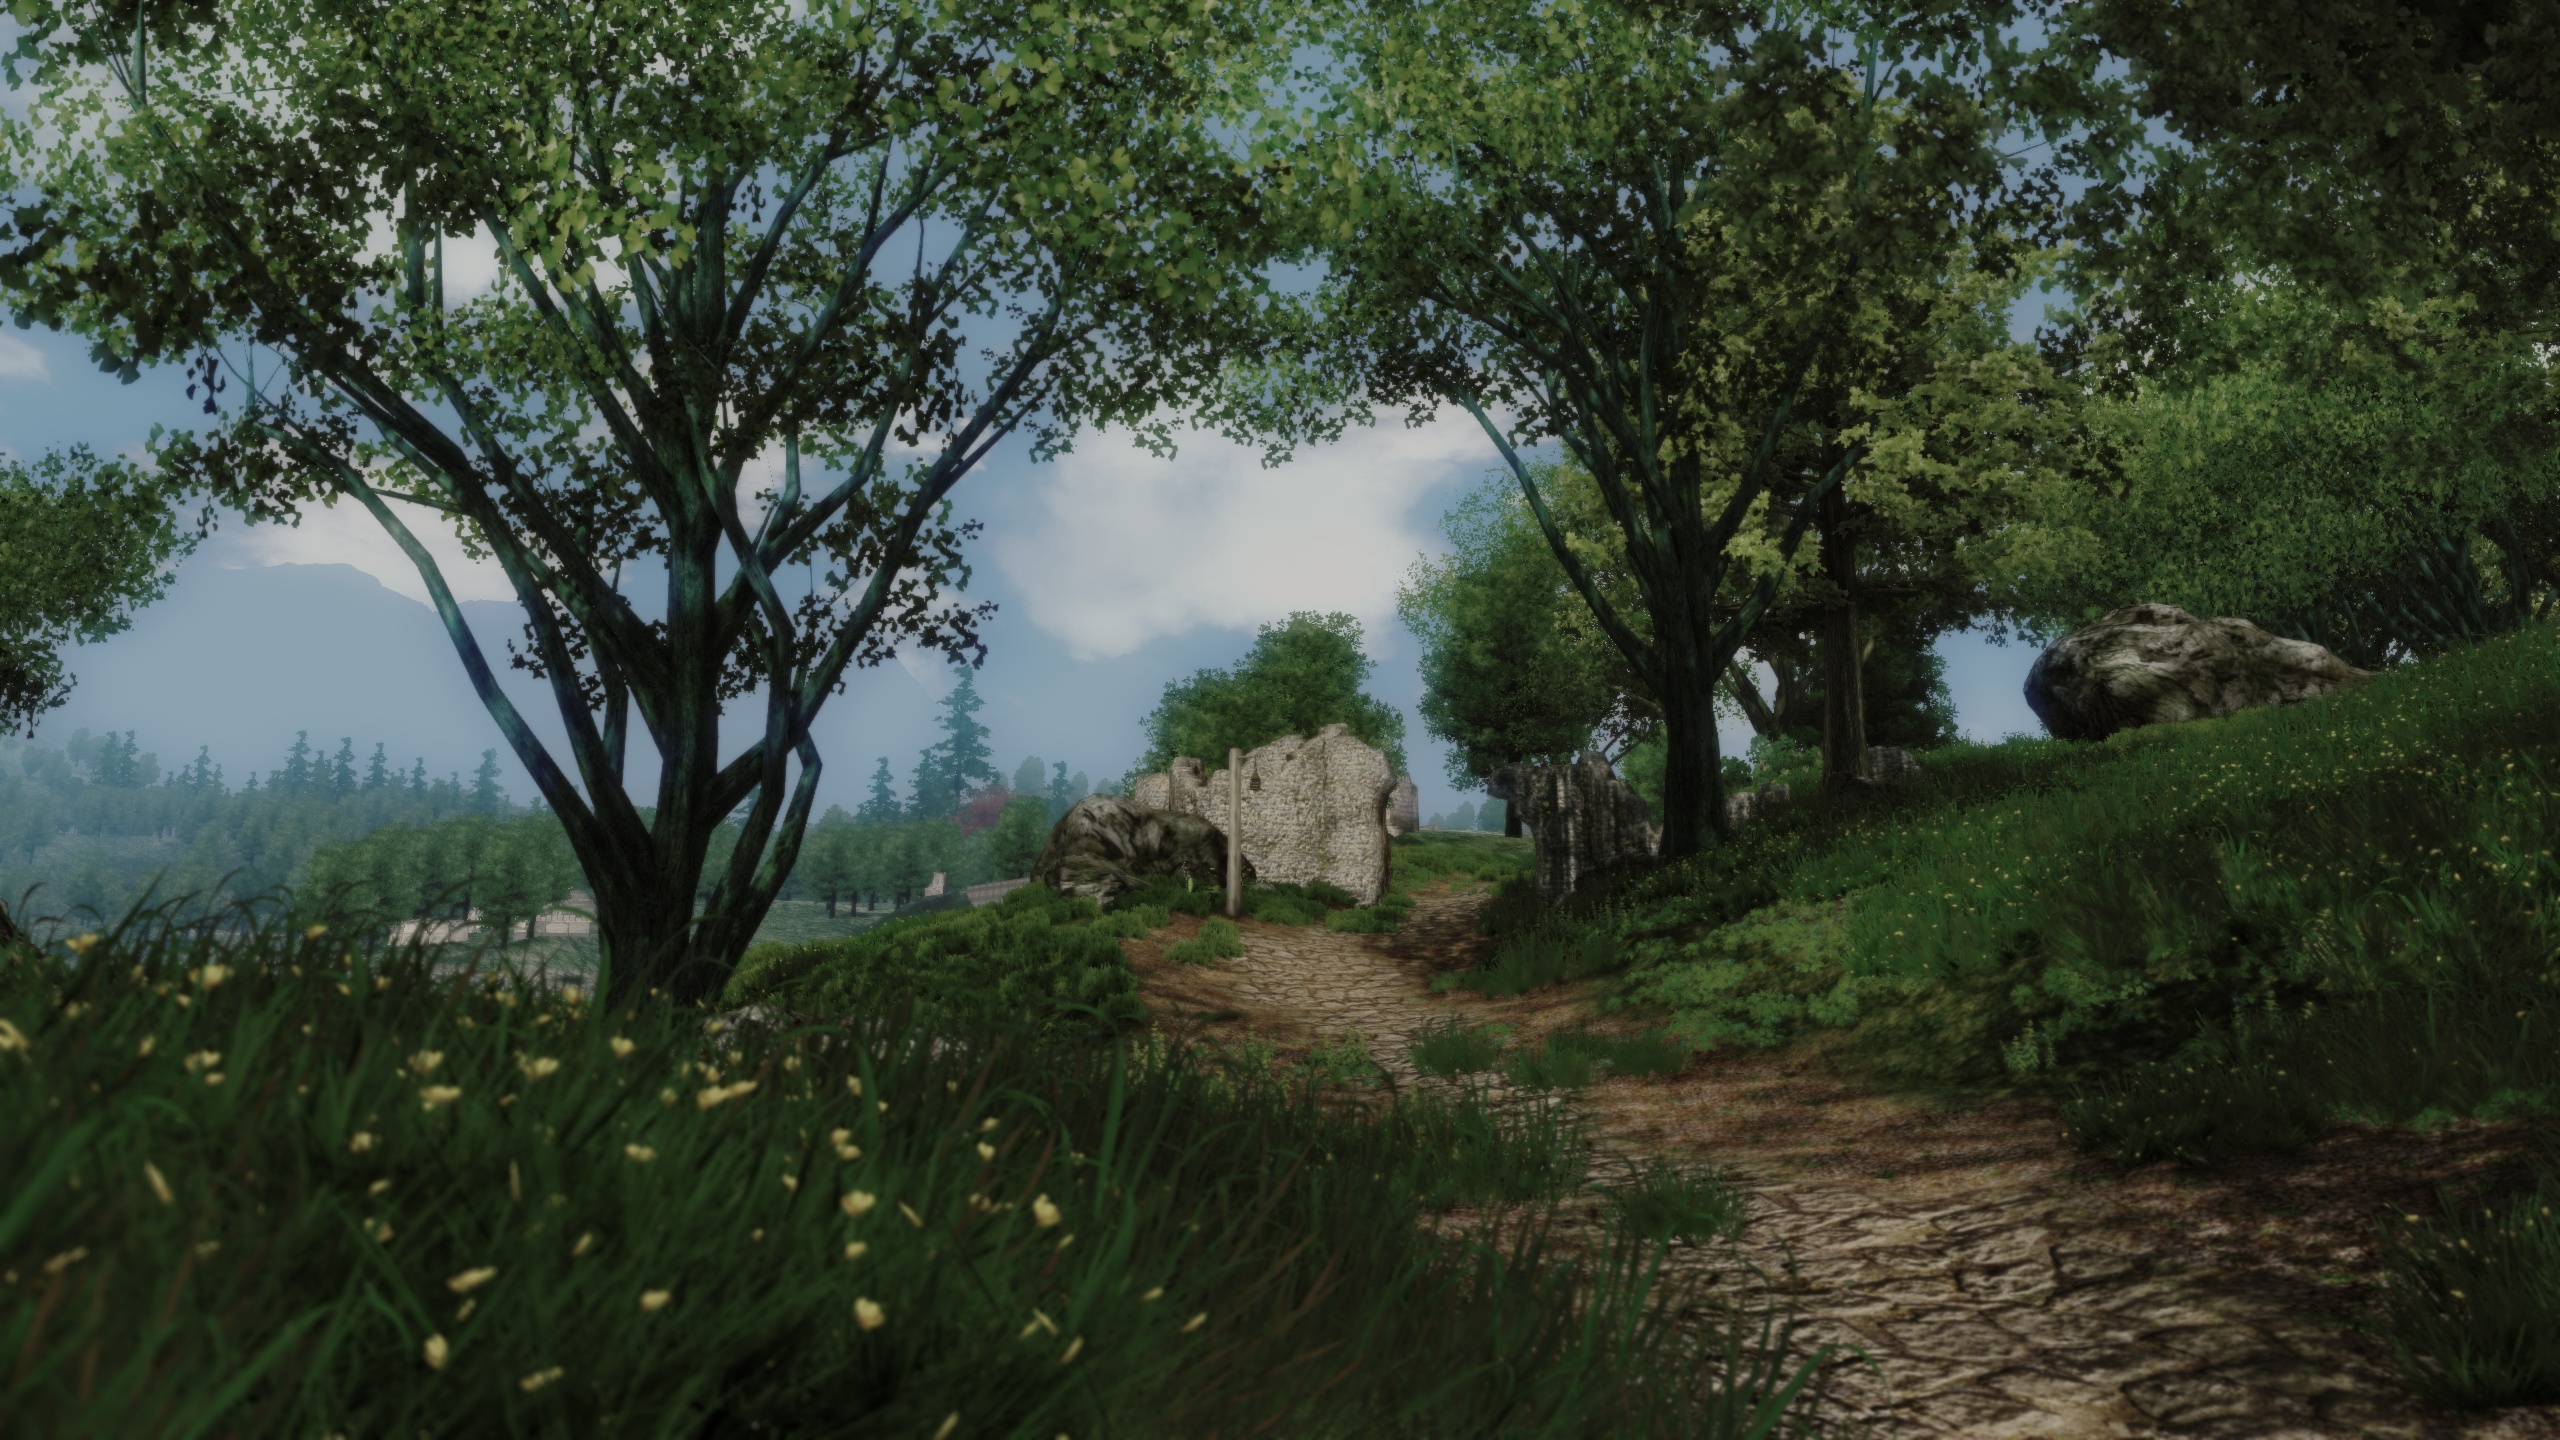 Download mobile wallpaper Video Game, The Elder Scrolls Iv: Oblivion, The Elder Scrolls for free.